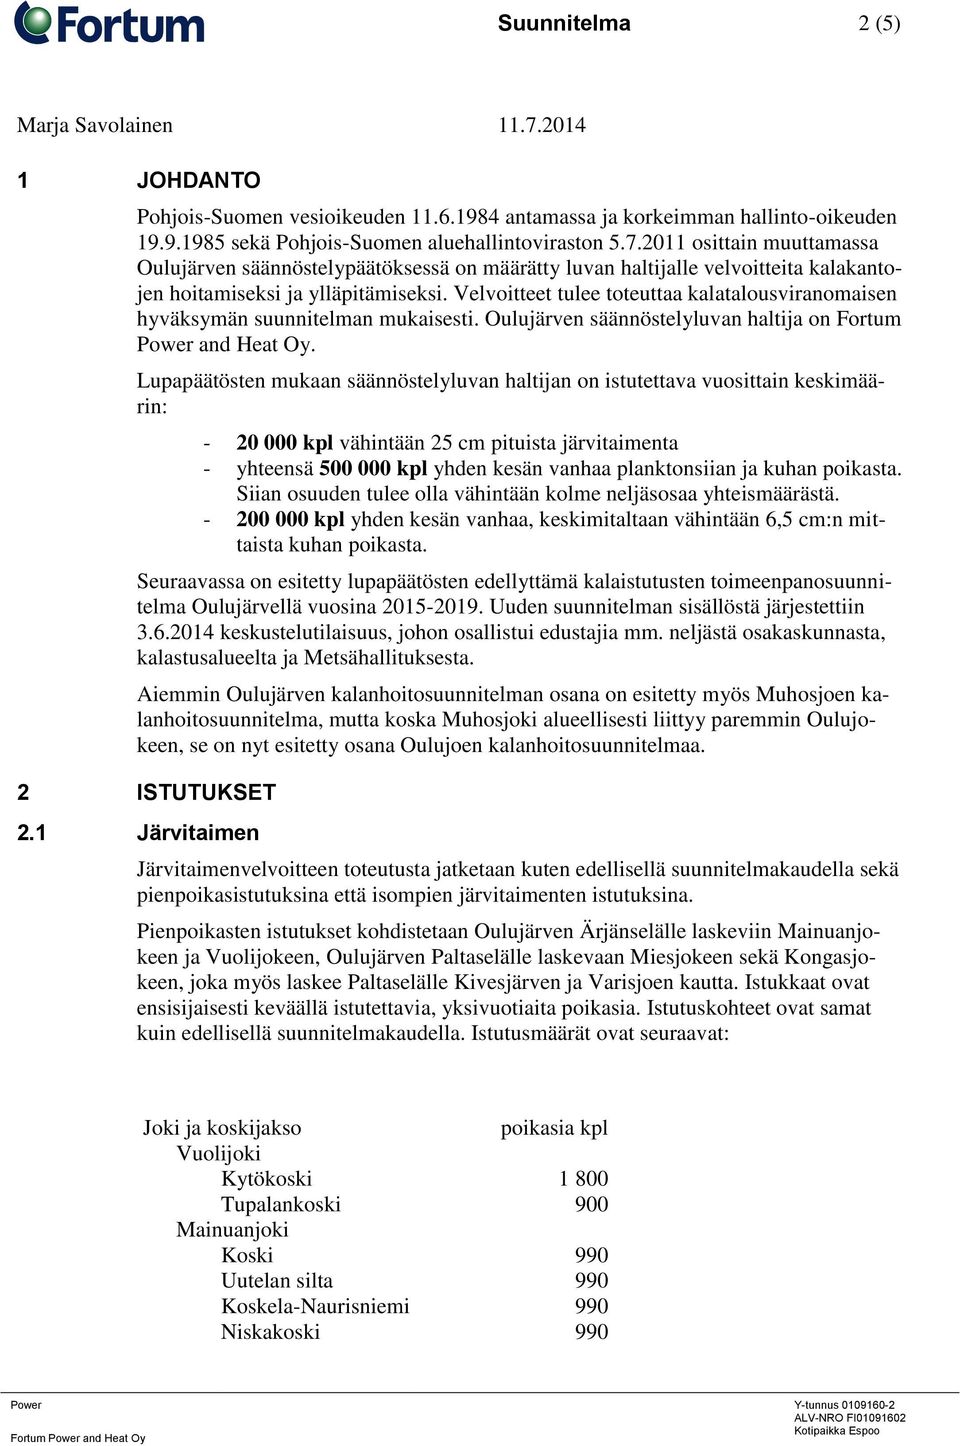 Velvoitteet tulee toteuttaa kalatalousviranomaisen hyväksymän suunnitelman mukaisesti. Oulujärven säännöstelyluvan haltija on Fortum Power and Heat Oy.